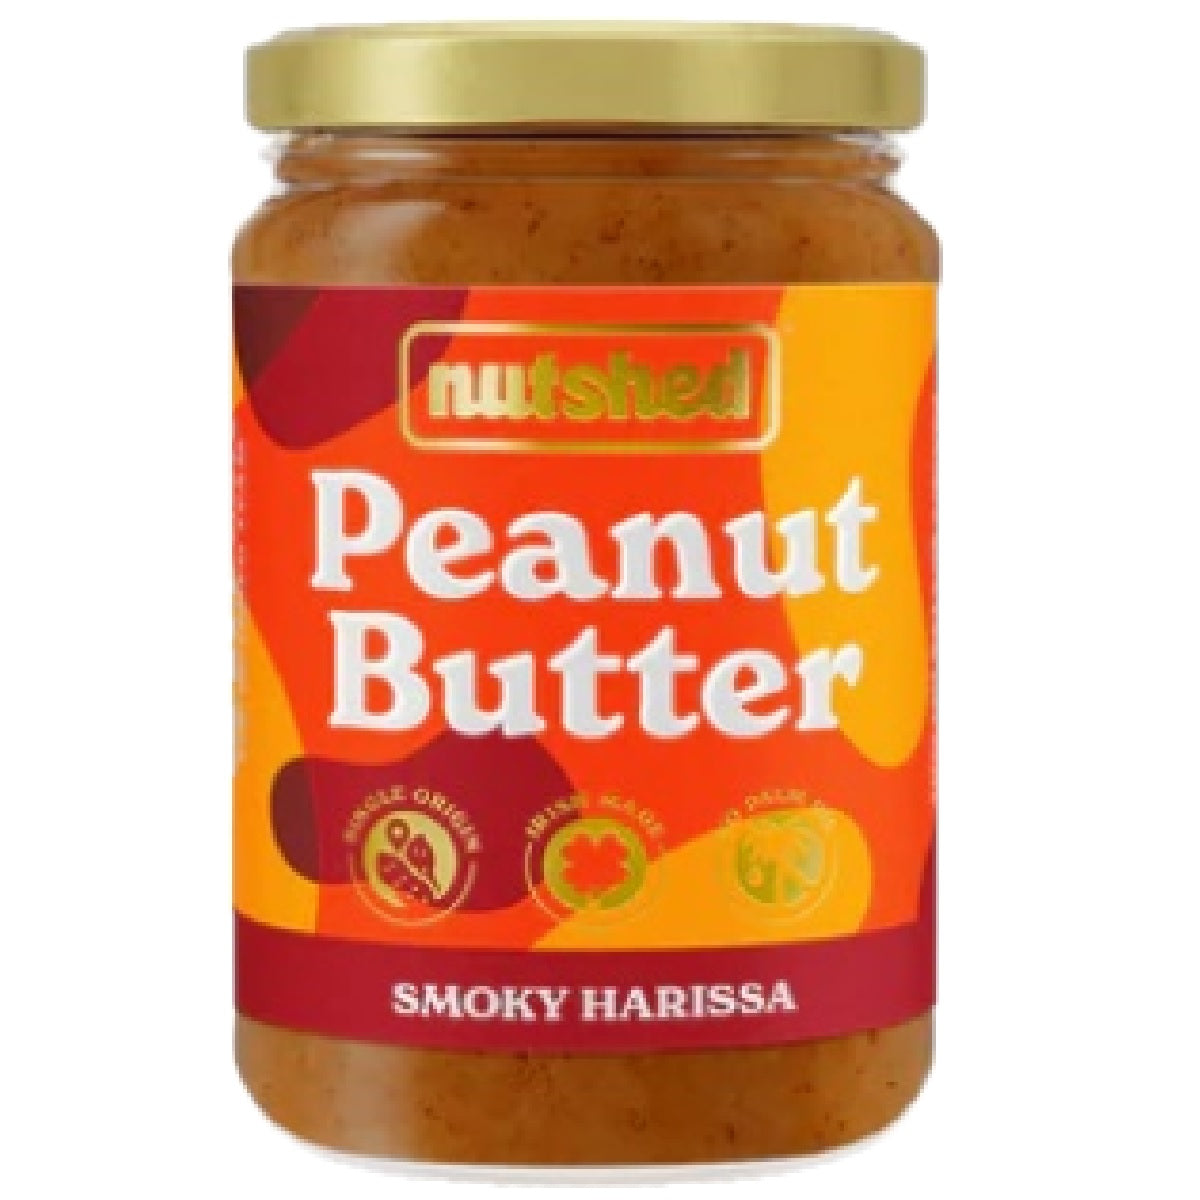 Nutshed Peanut Butter Smoky Harissa 290g